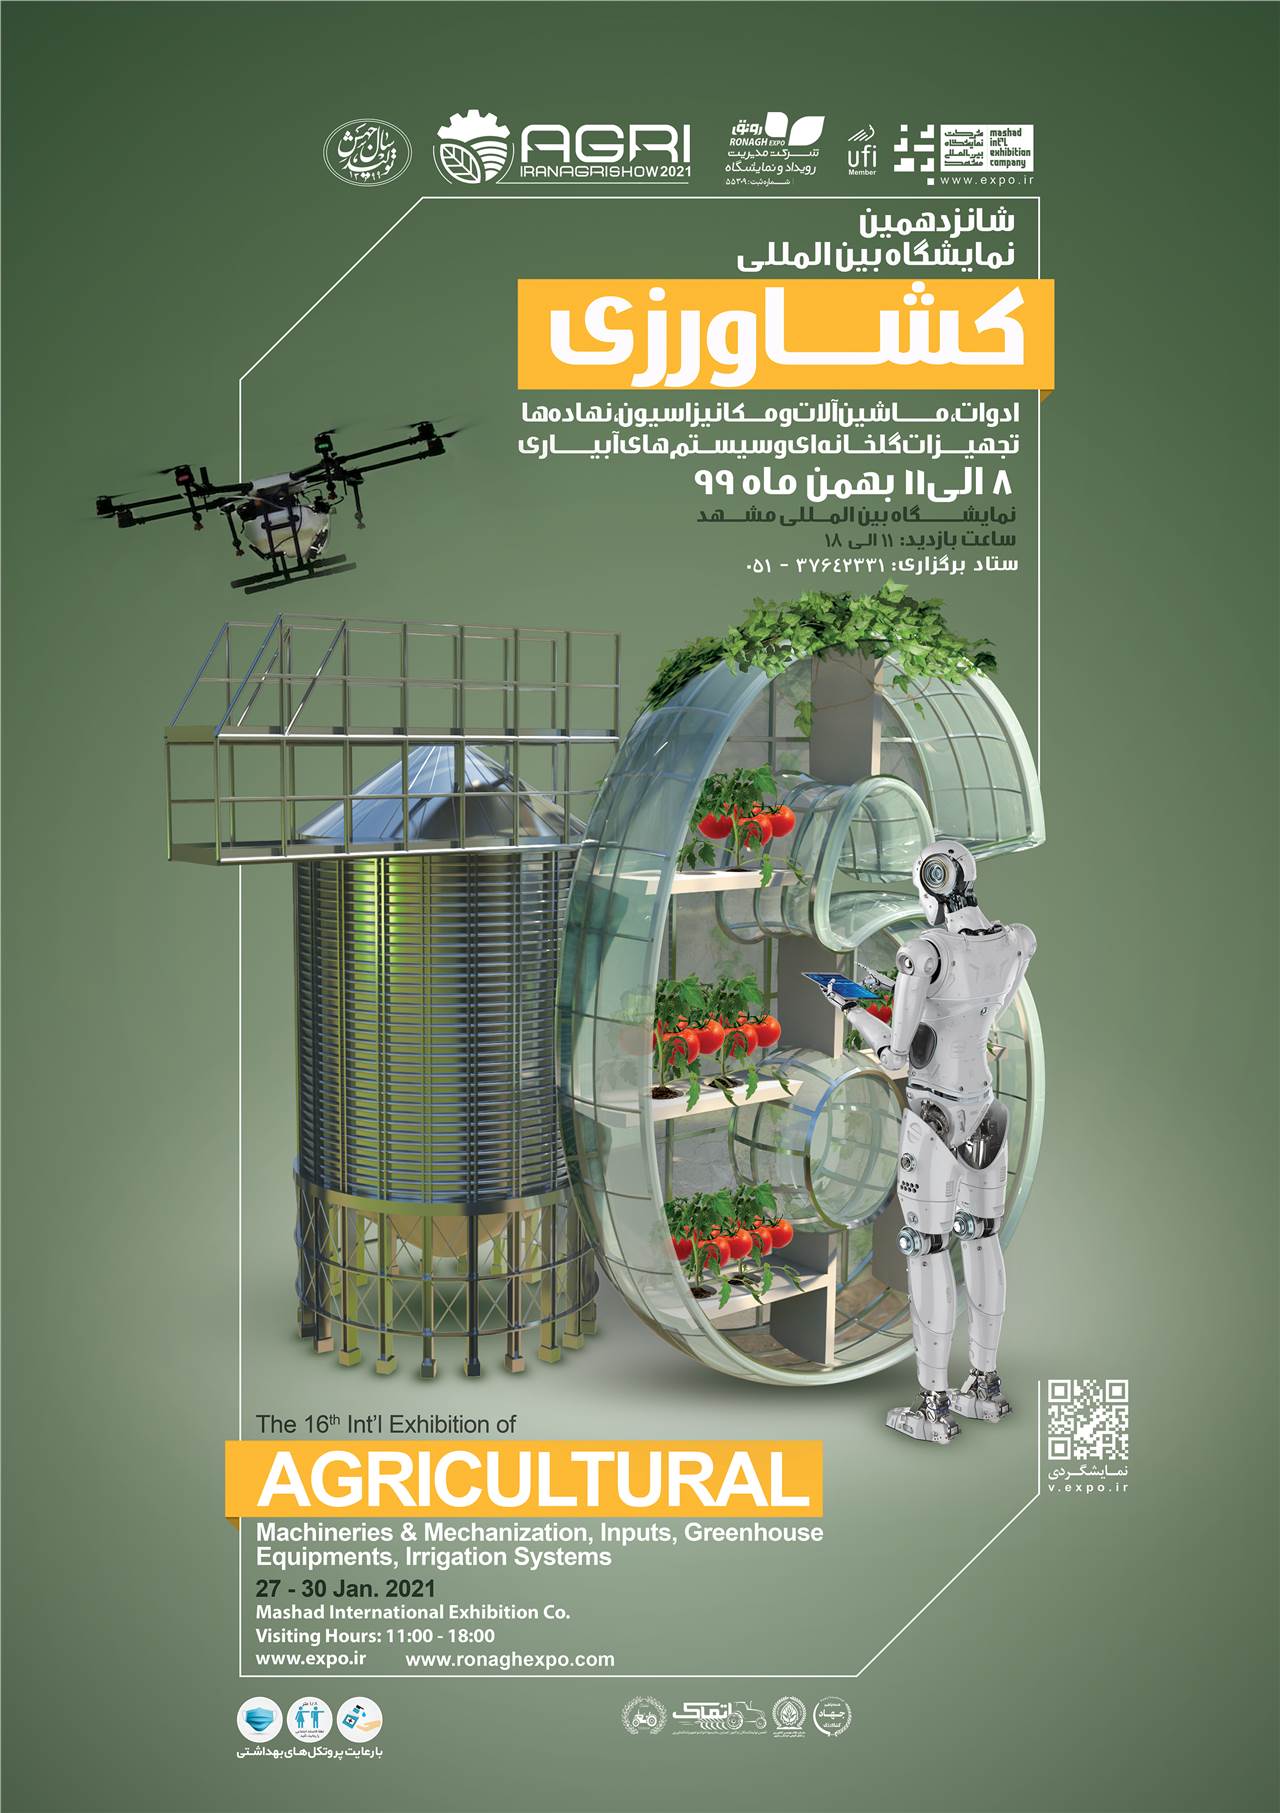 نمایشگاه بین المللی کشاورزی، ادوات، ماشین آلات و مکانیزاسیون،نهادها، تجهیزات گاخانه ای و سیستم های آبیاری مشهد 99